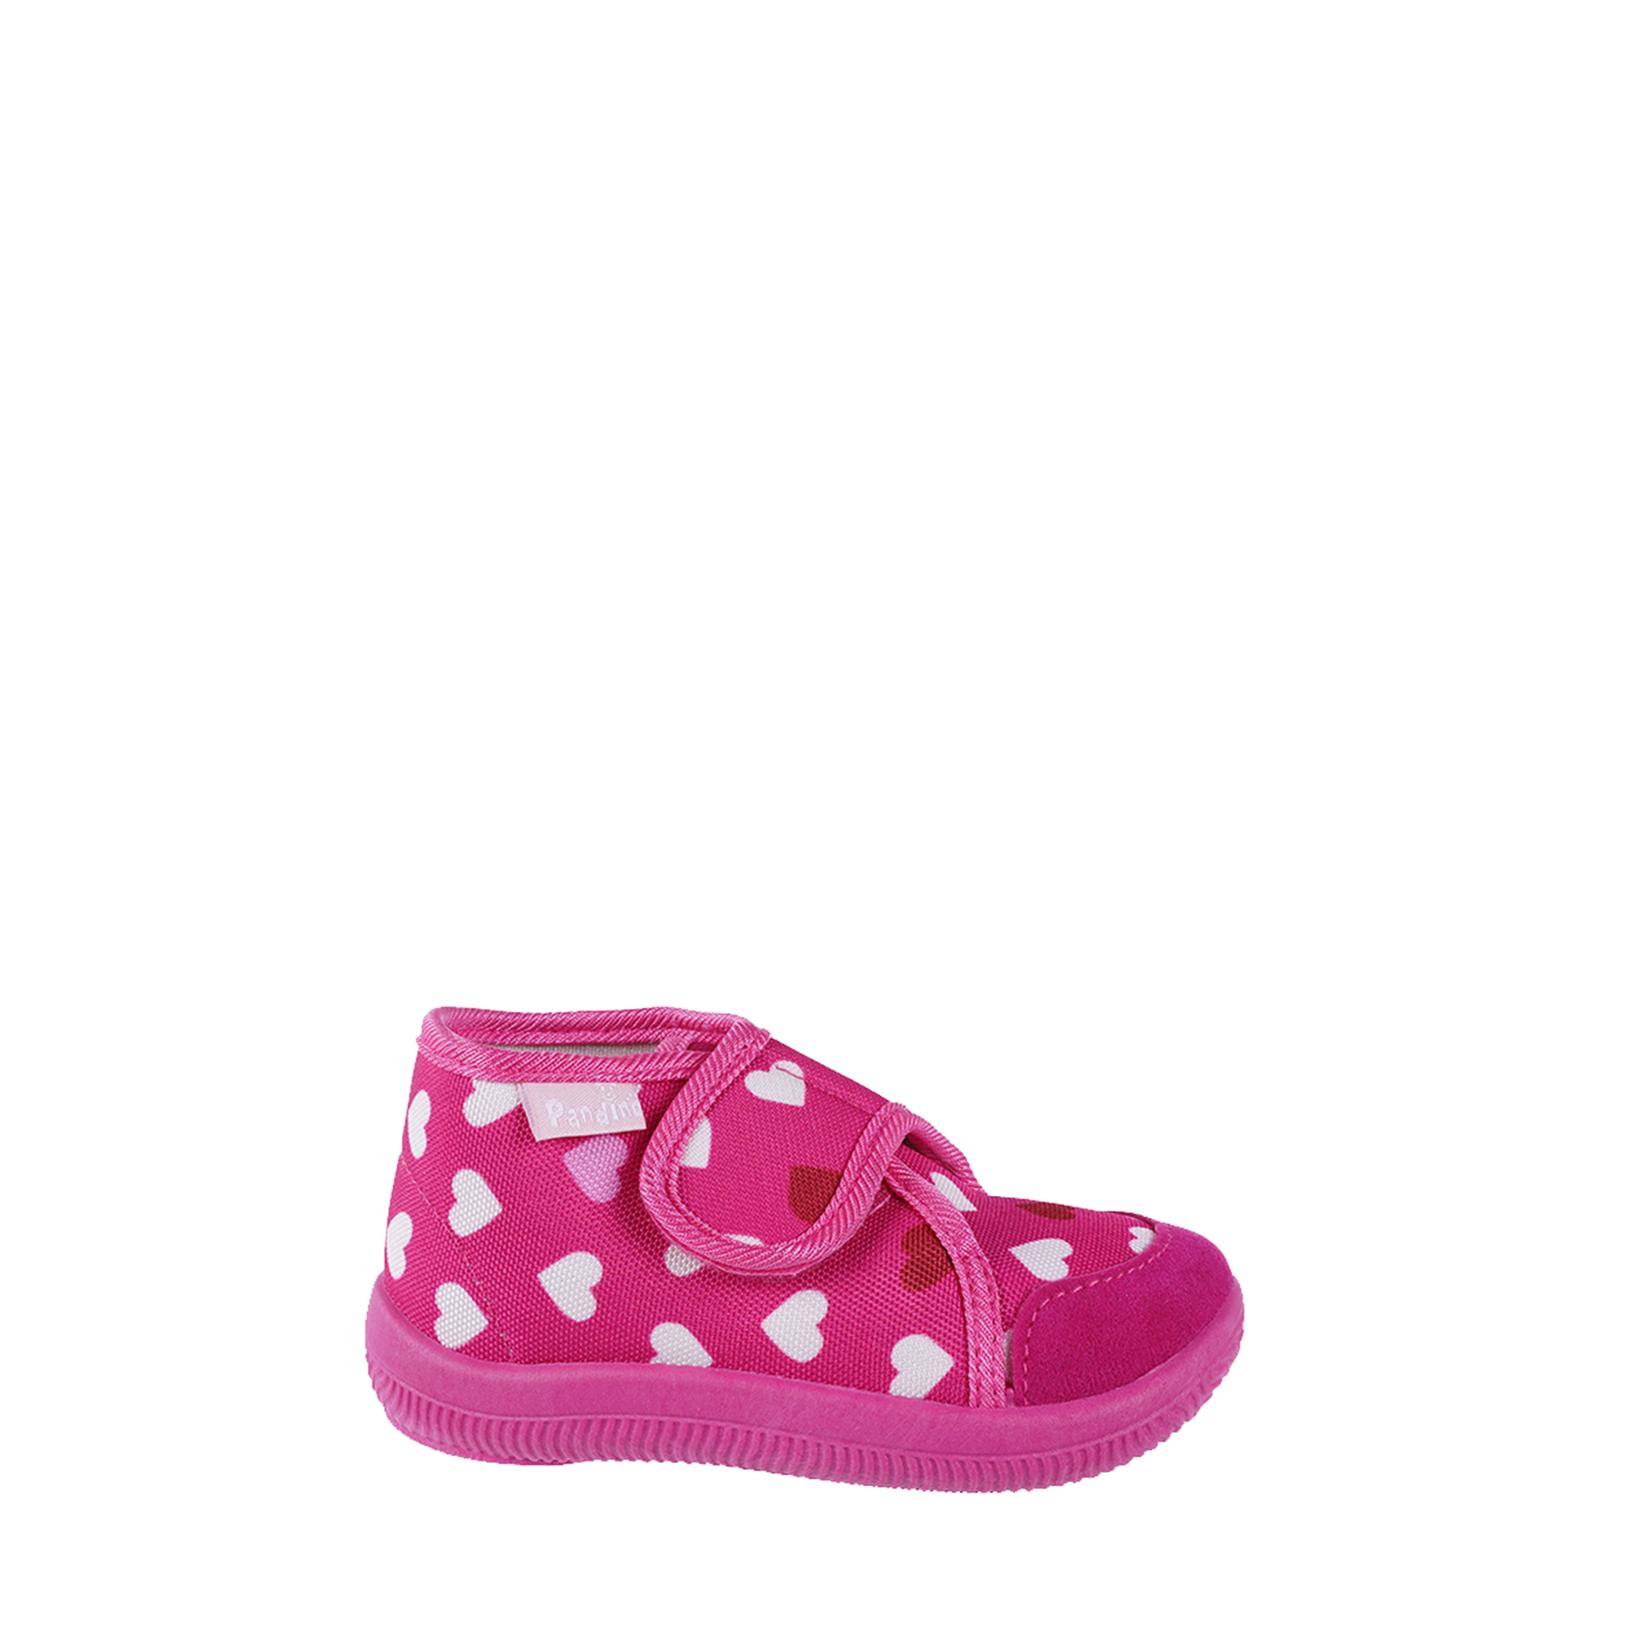 Selected image for PANDINO GIRL Sobne papuče za devojčice N75494, Roze